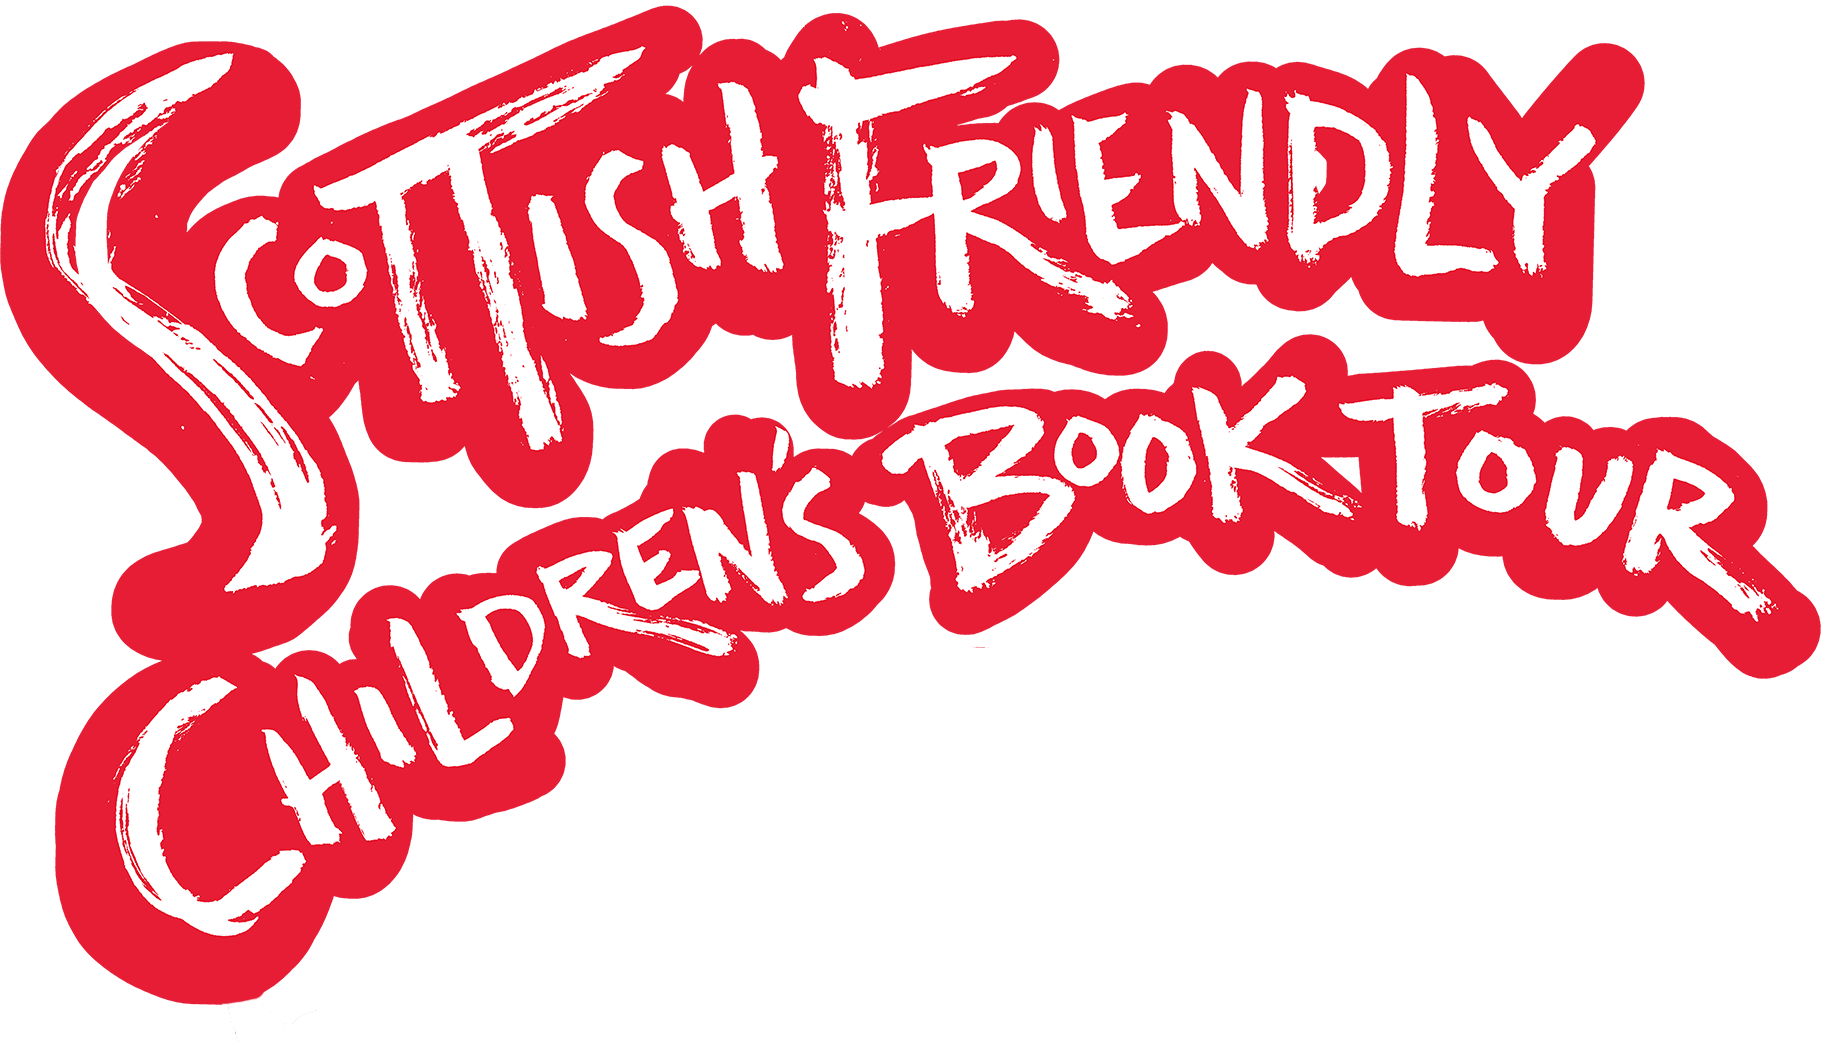 Scottish friendly childrens book tour logo